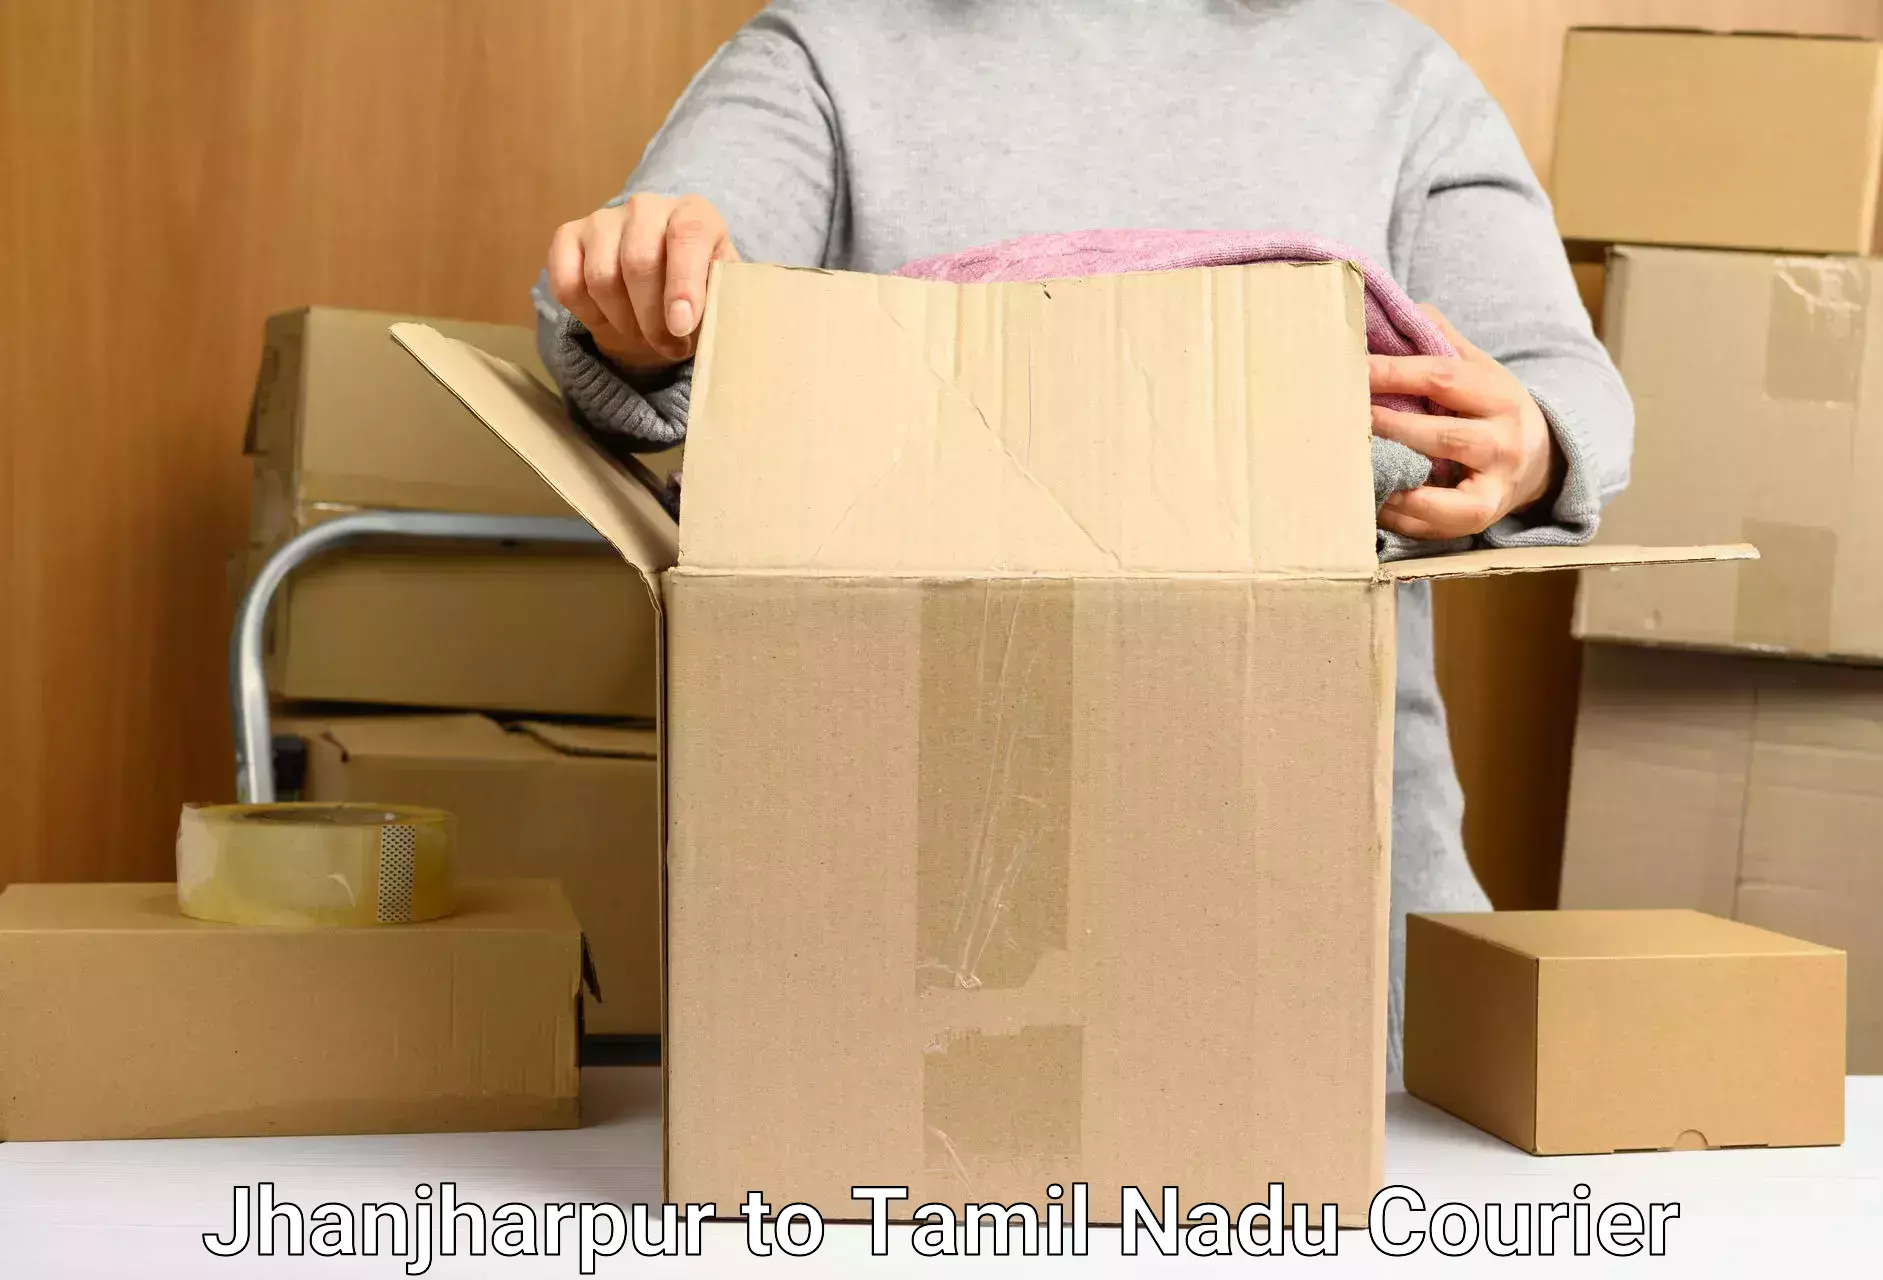 Custom courier packaging Jhanjharpur to Chennai